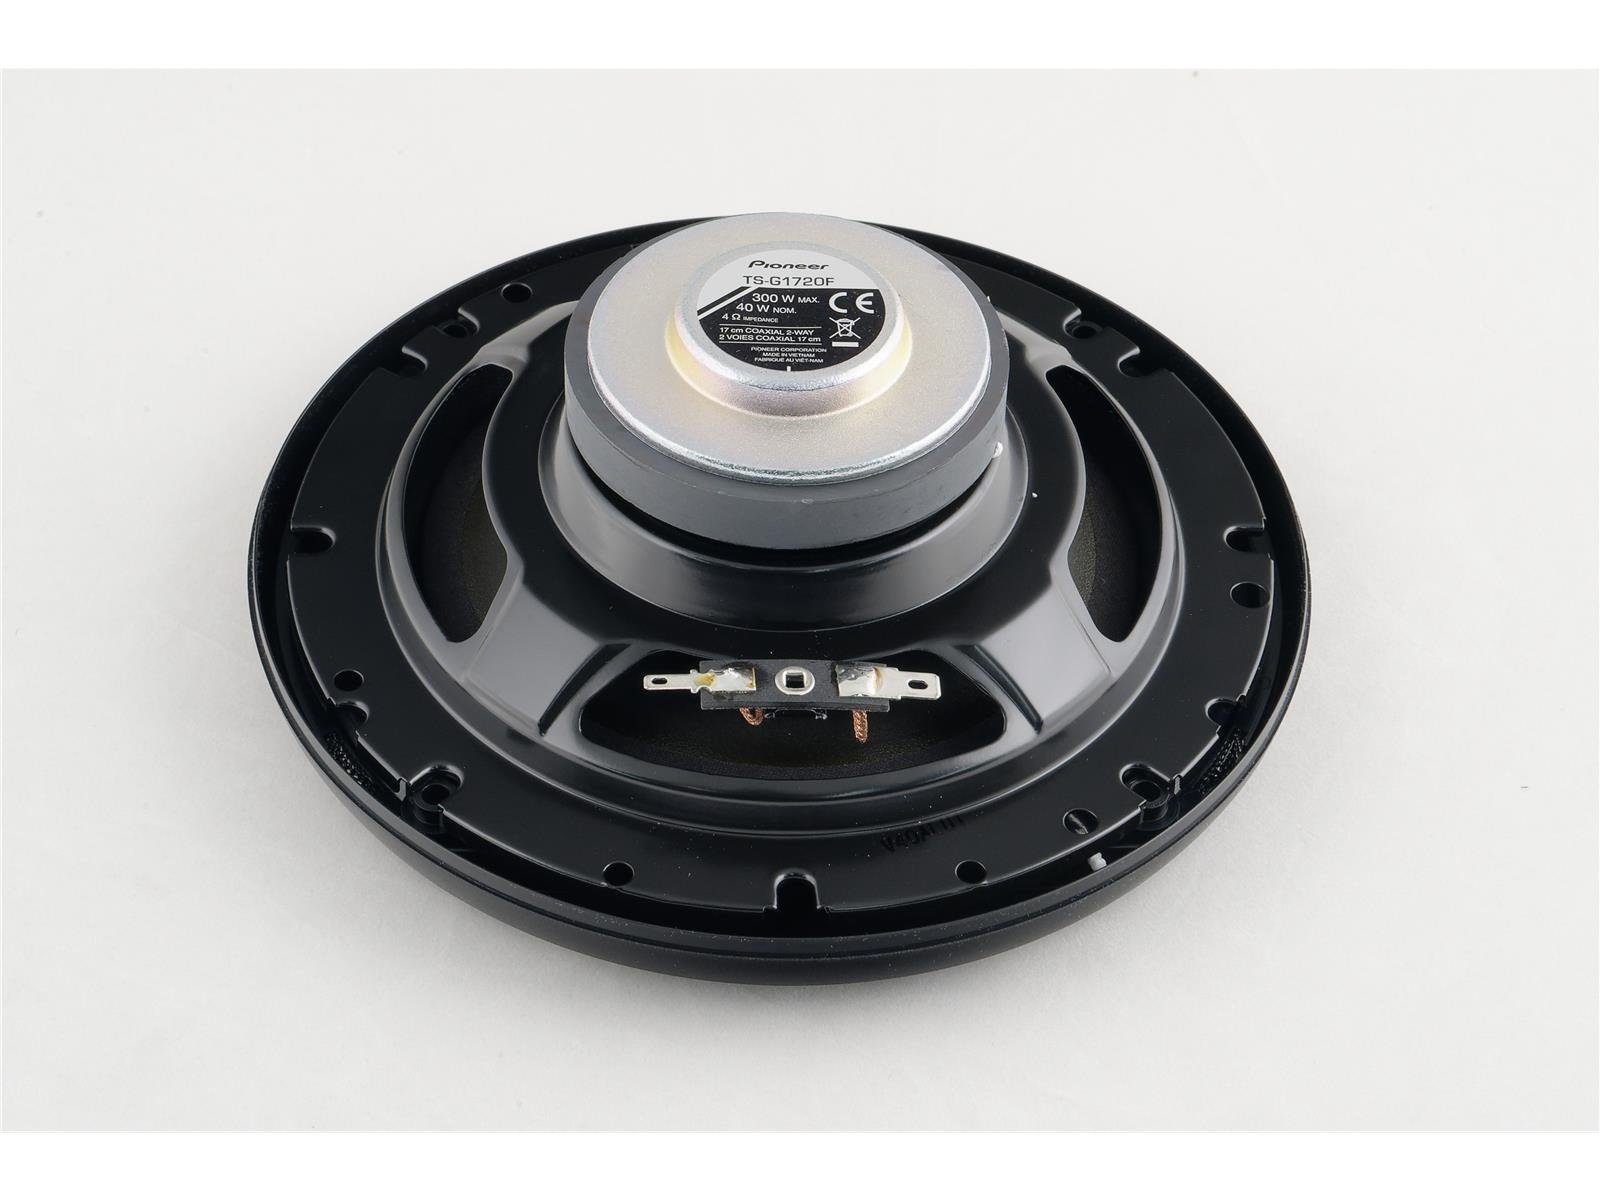 oder MK6 Lautsprecher Ford vorne für Pioneer Auto-Lautsprecher Pioneer hinten Fiesta passend